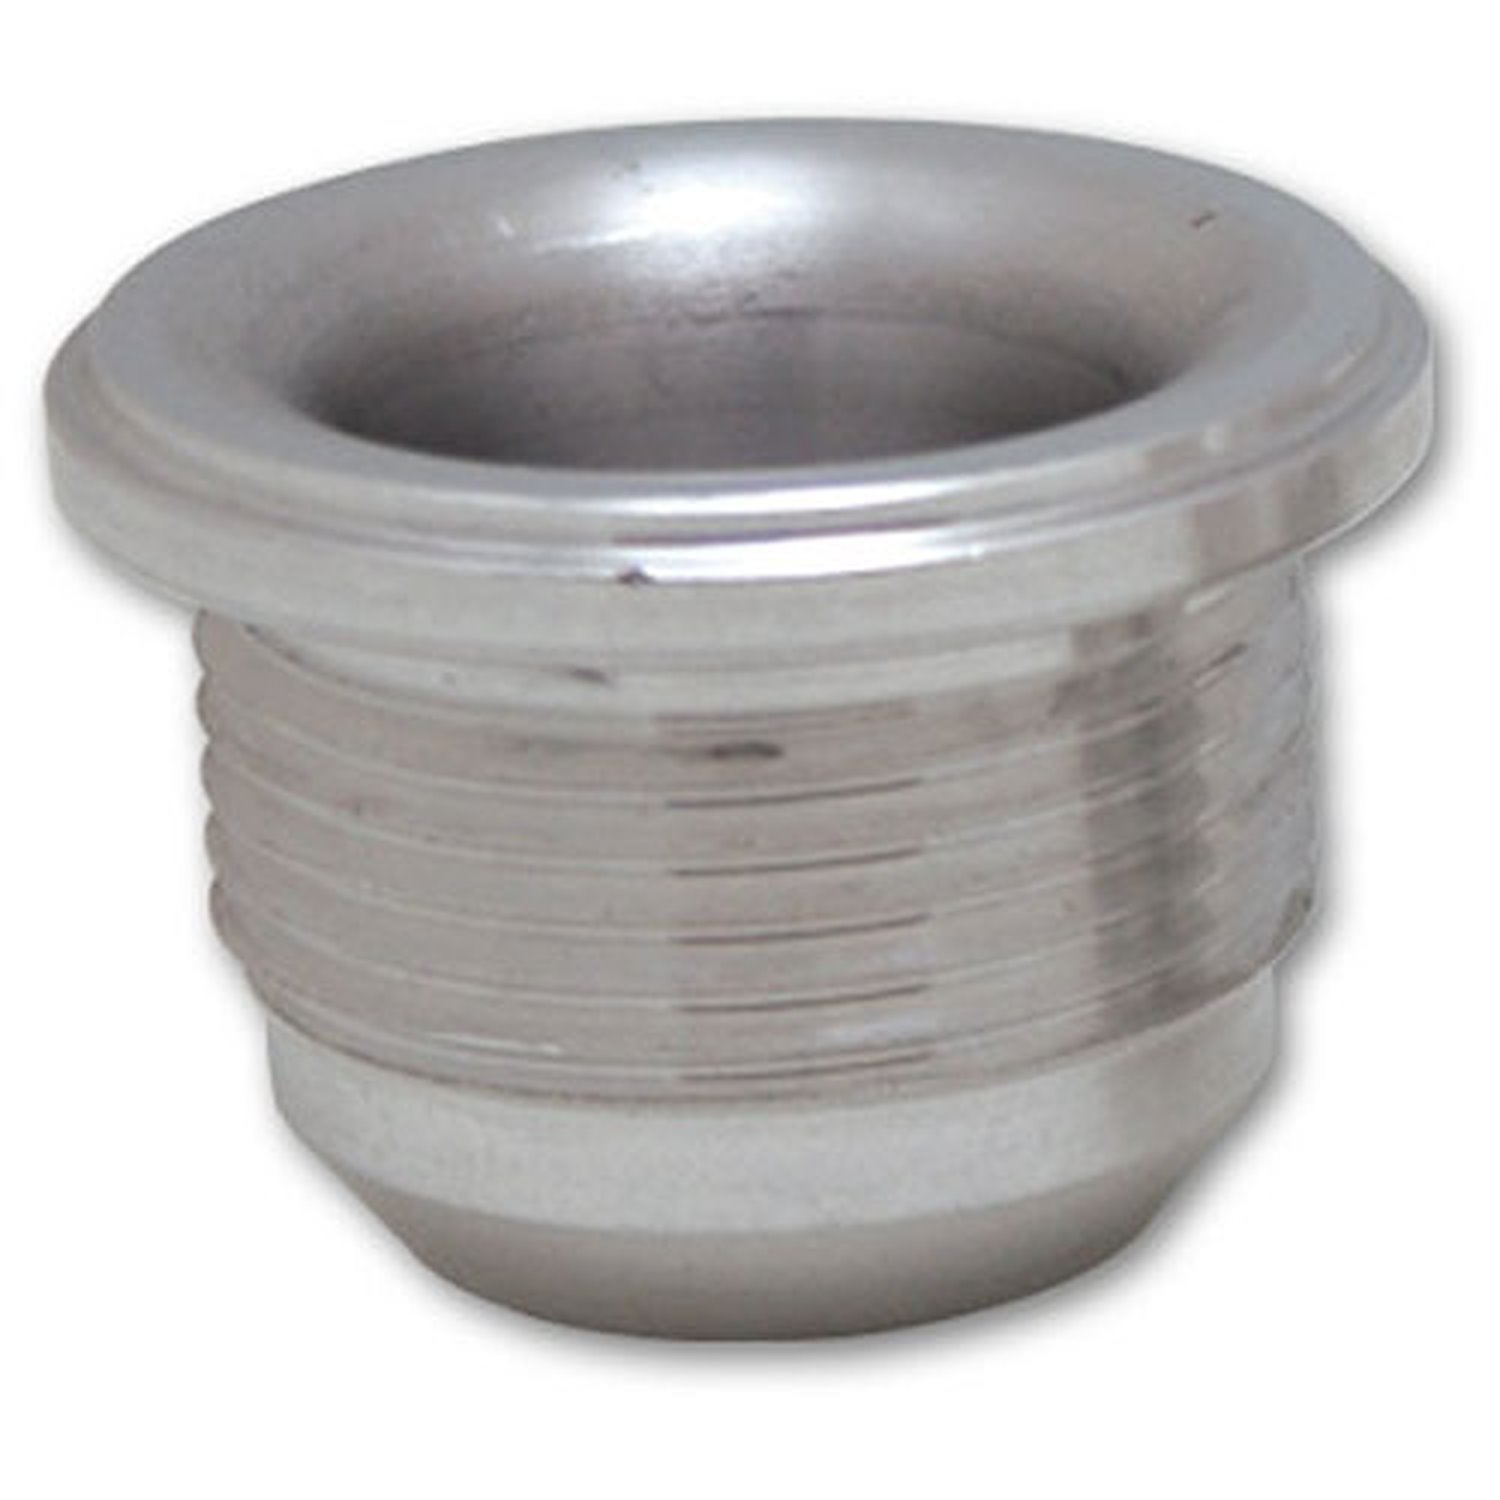 Male -10AN Aluminum Weld Bung 7/8" - 14 SAE Thread